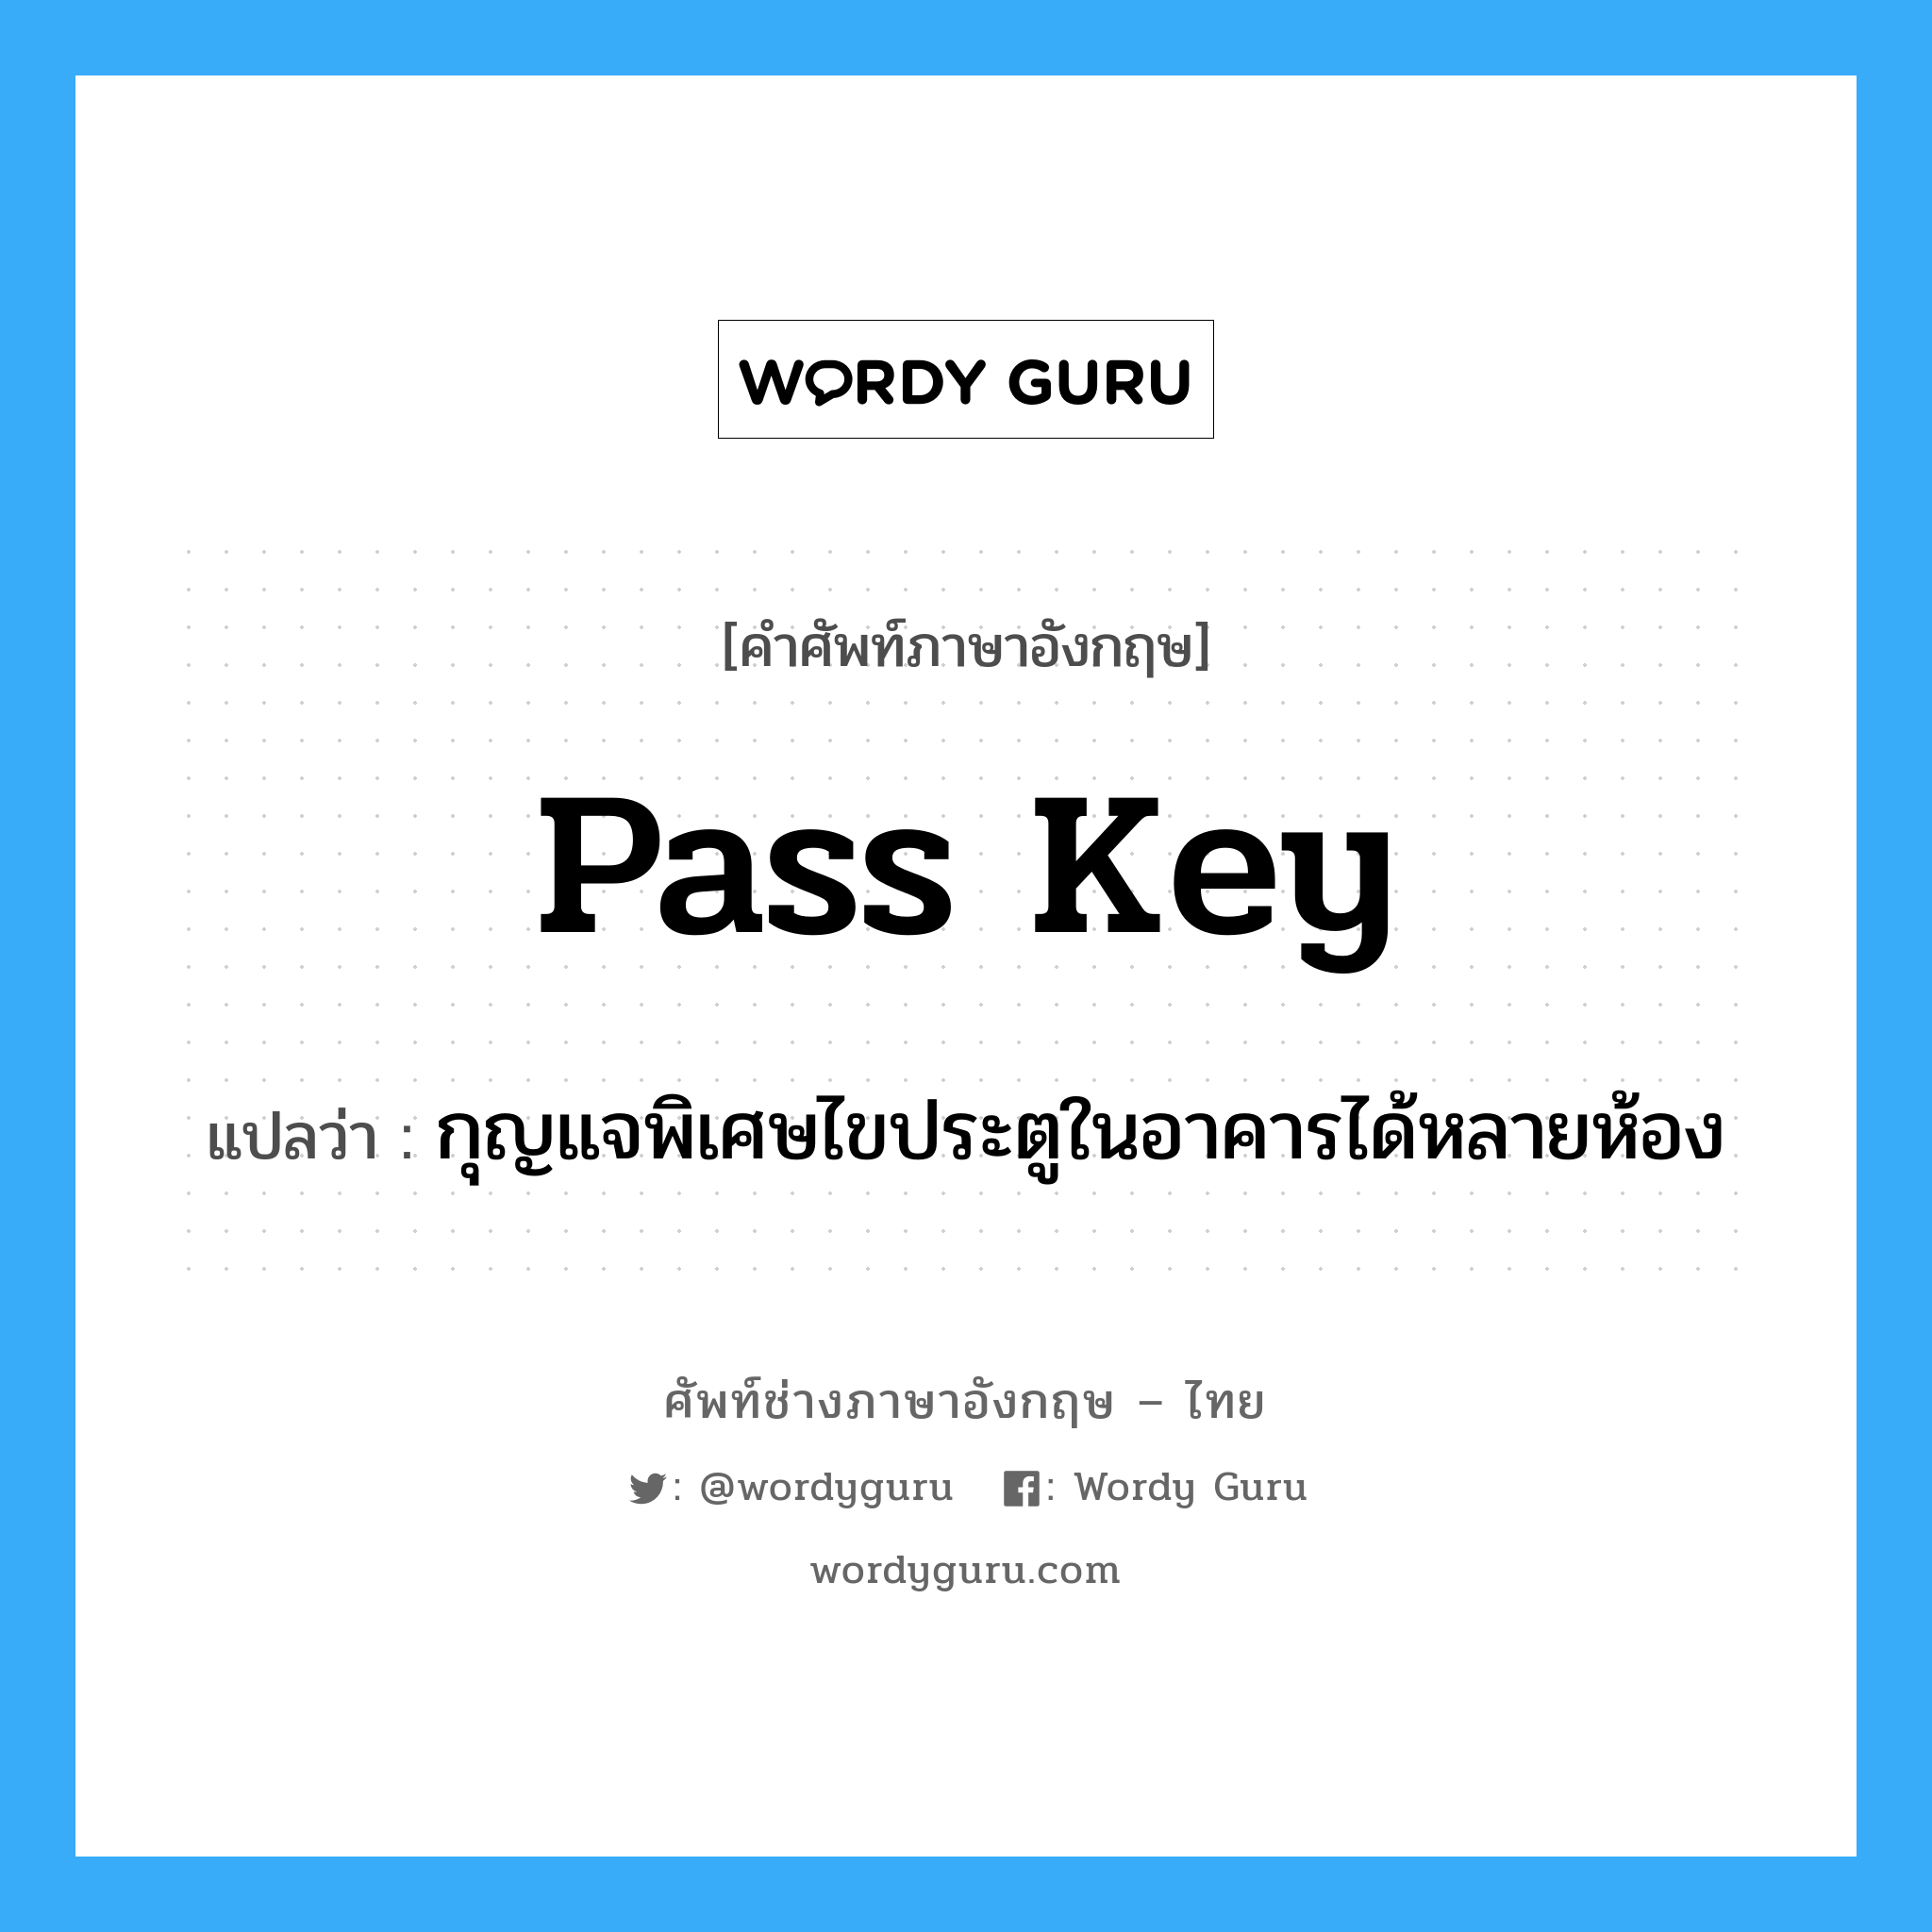 pass key แปลว่า?, คำศัพท์ช่างภาษาอังกฤษ - ไทย pass key คำศัพท์ภาษาอังกฤษ pass key แปลว่า กุญแจพิเศษไขประตูในอาคารได้หลายห้อง